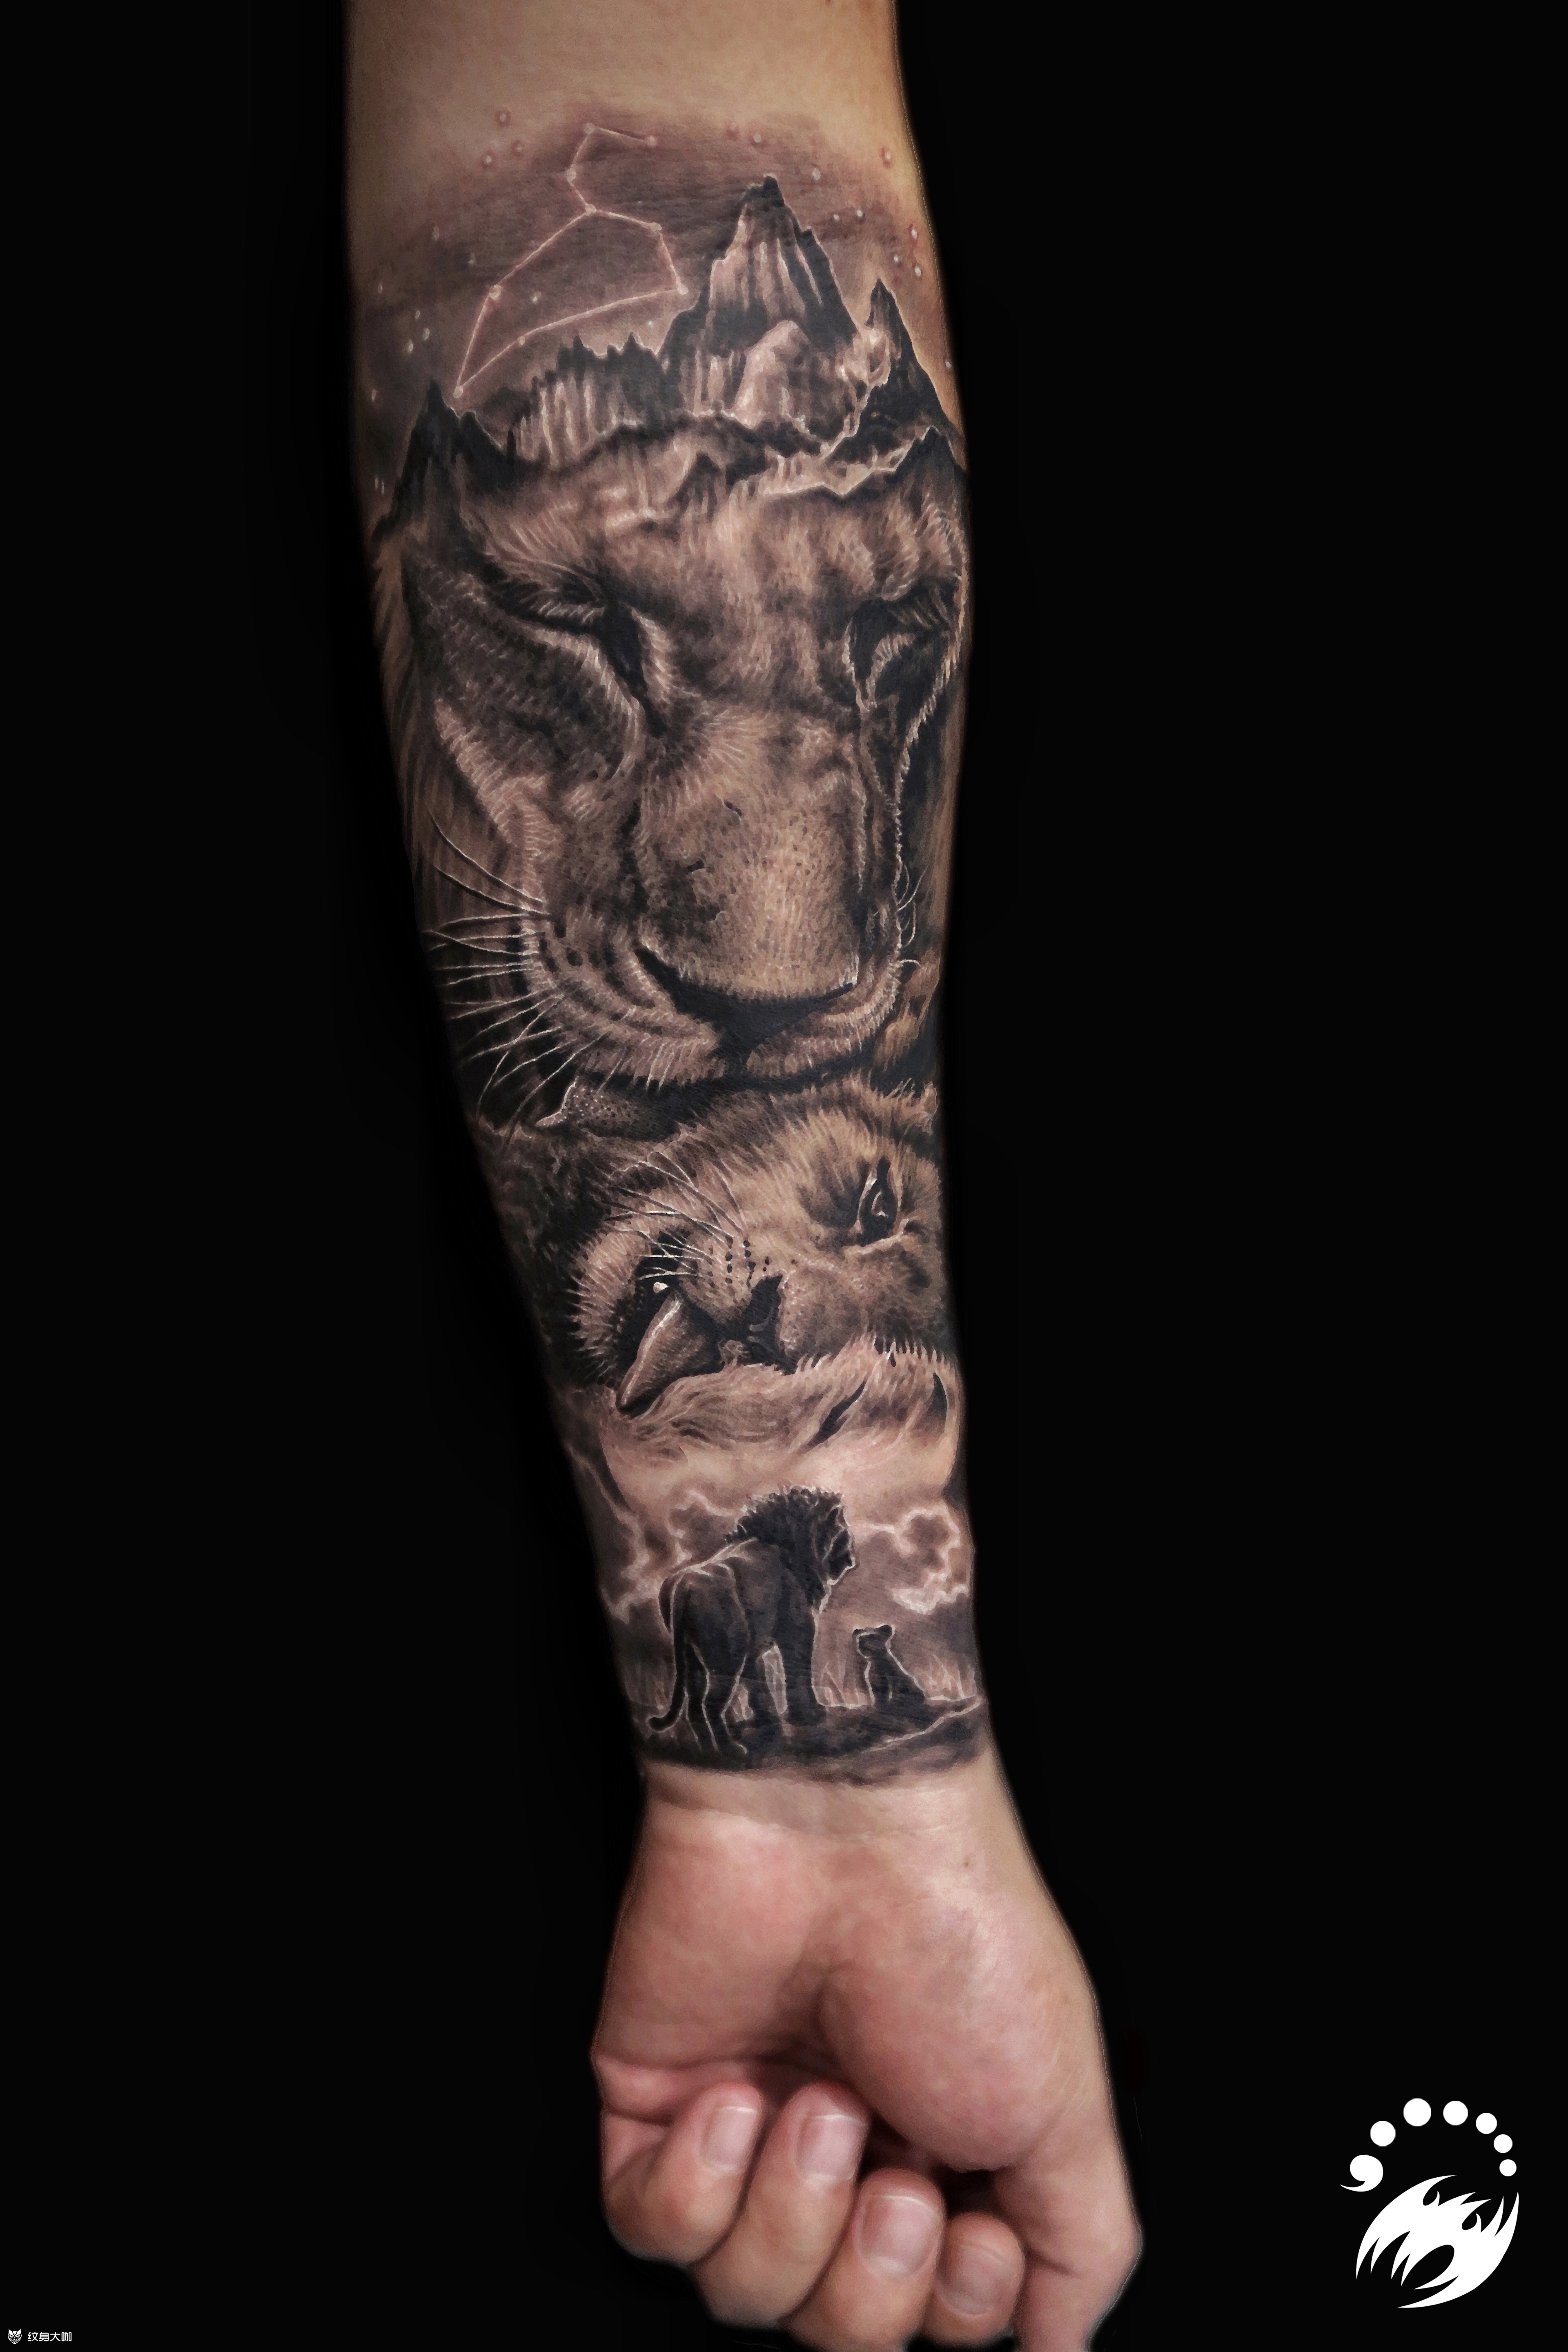 朴宰范狮子纹身图案图片